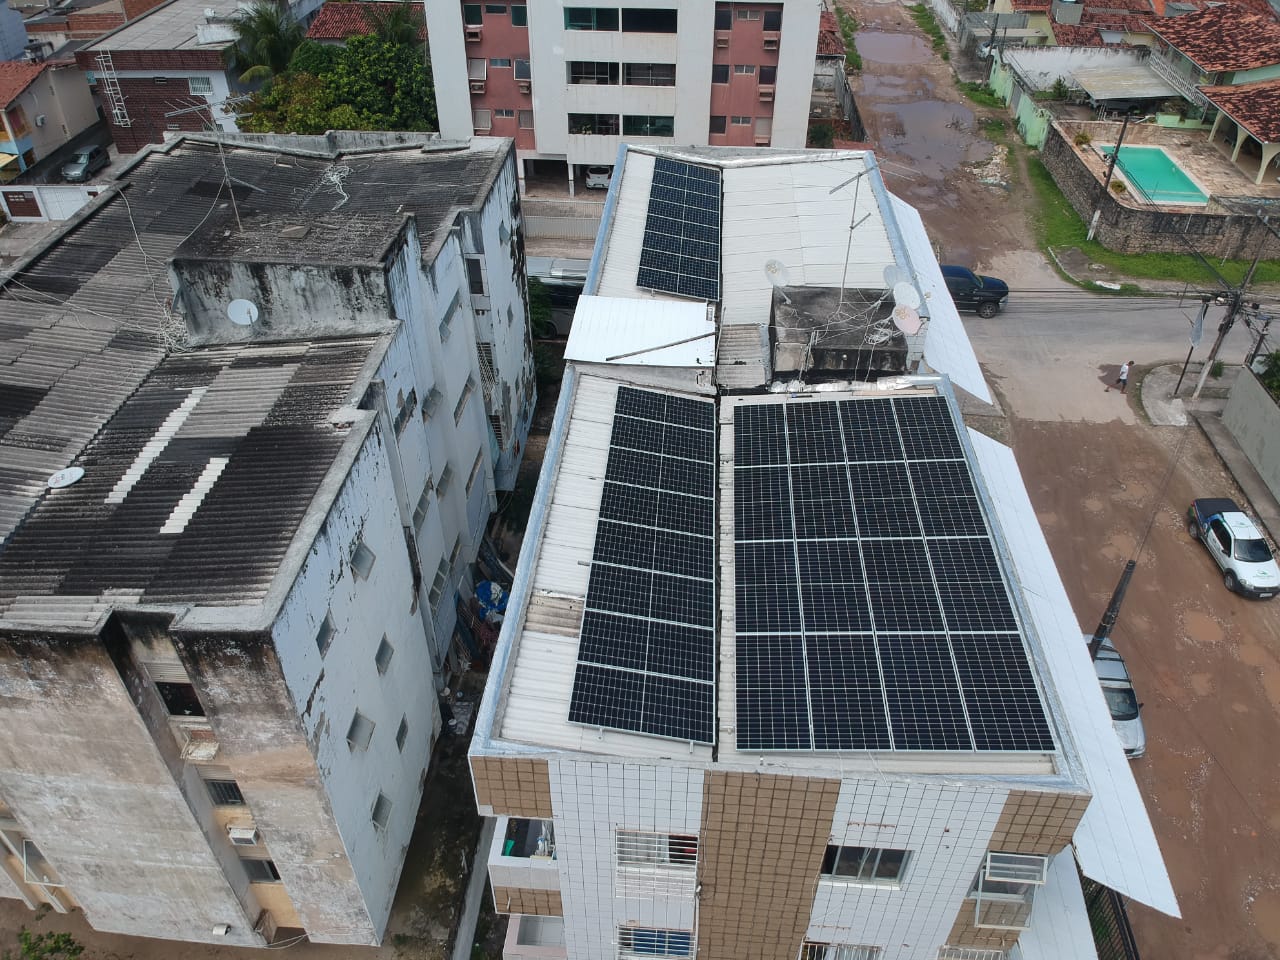 Sistema instalado no bairro Nossa Senhora da Conceição, Paulista-PE. Composto por 08 módulos Solar Fotovoltaico de potência 450W e 02 Micro inversor Hoymile. Com plataforma para monitoramento Online nível módulo a módulo.